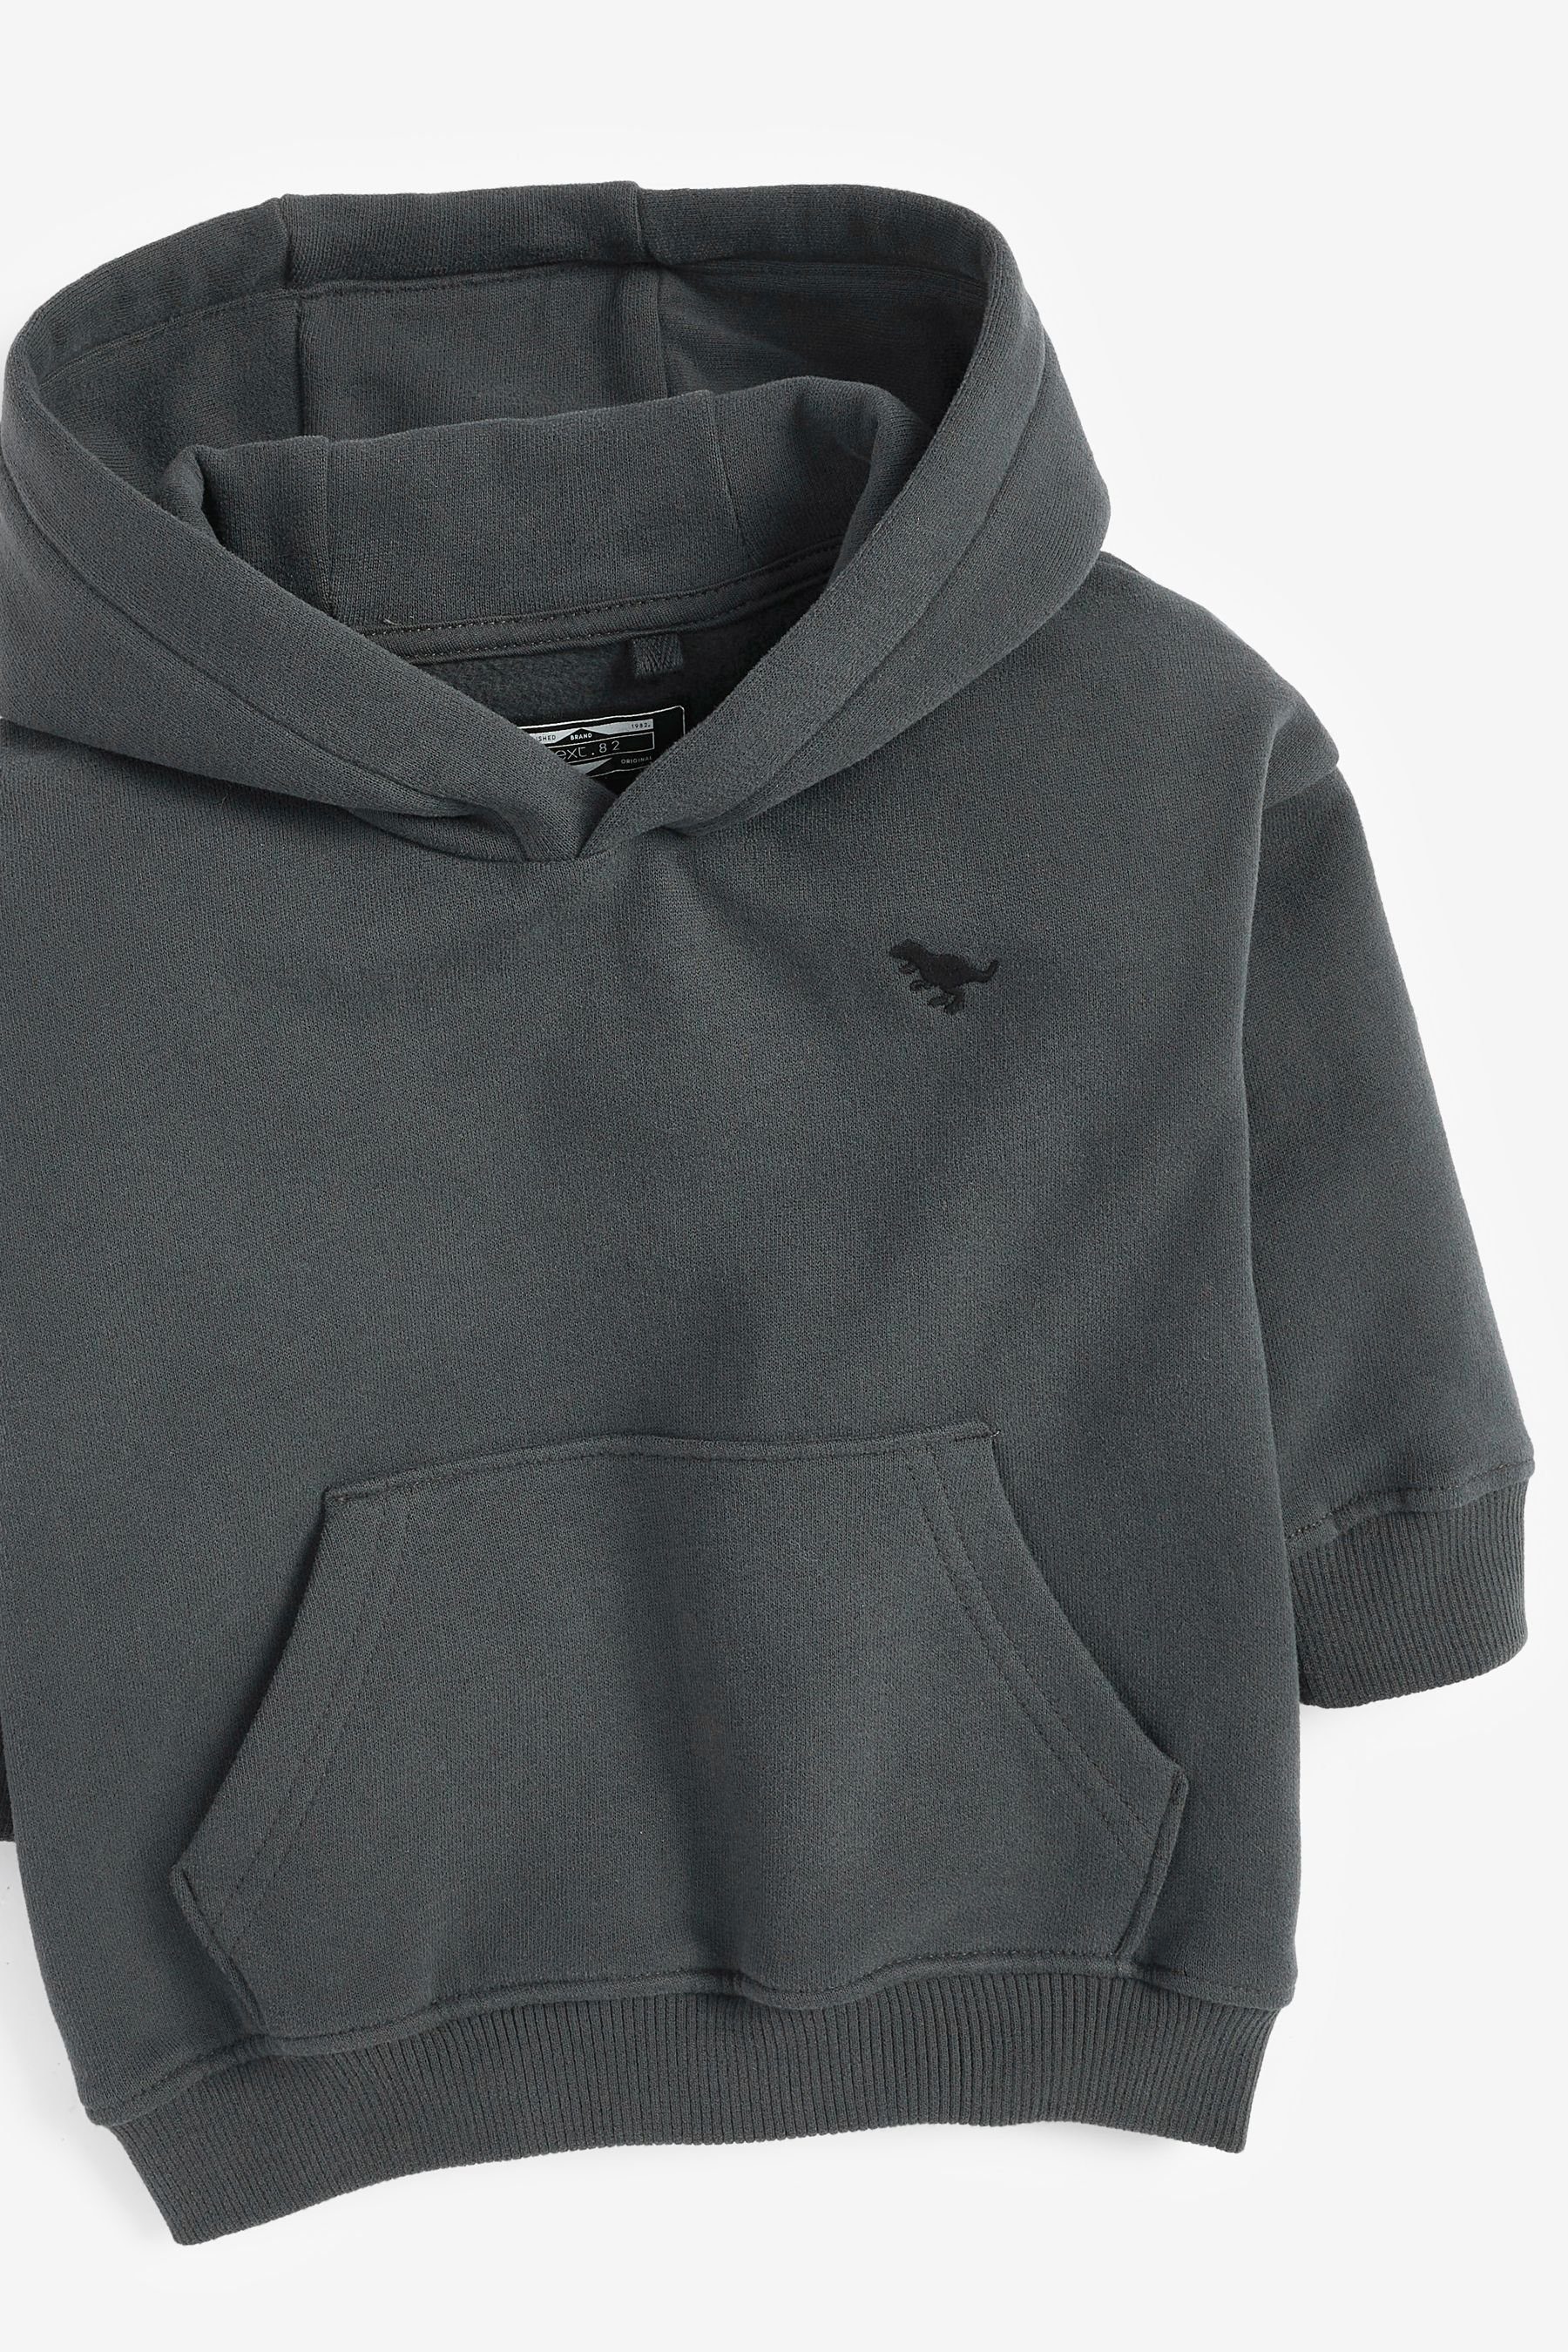 Weiche Next Grey Jersey aus Charcoal Hose Kapuzensweatshirt (1-tlg)